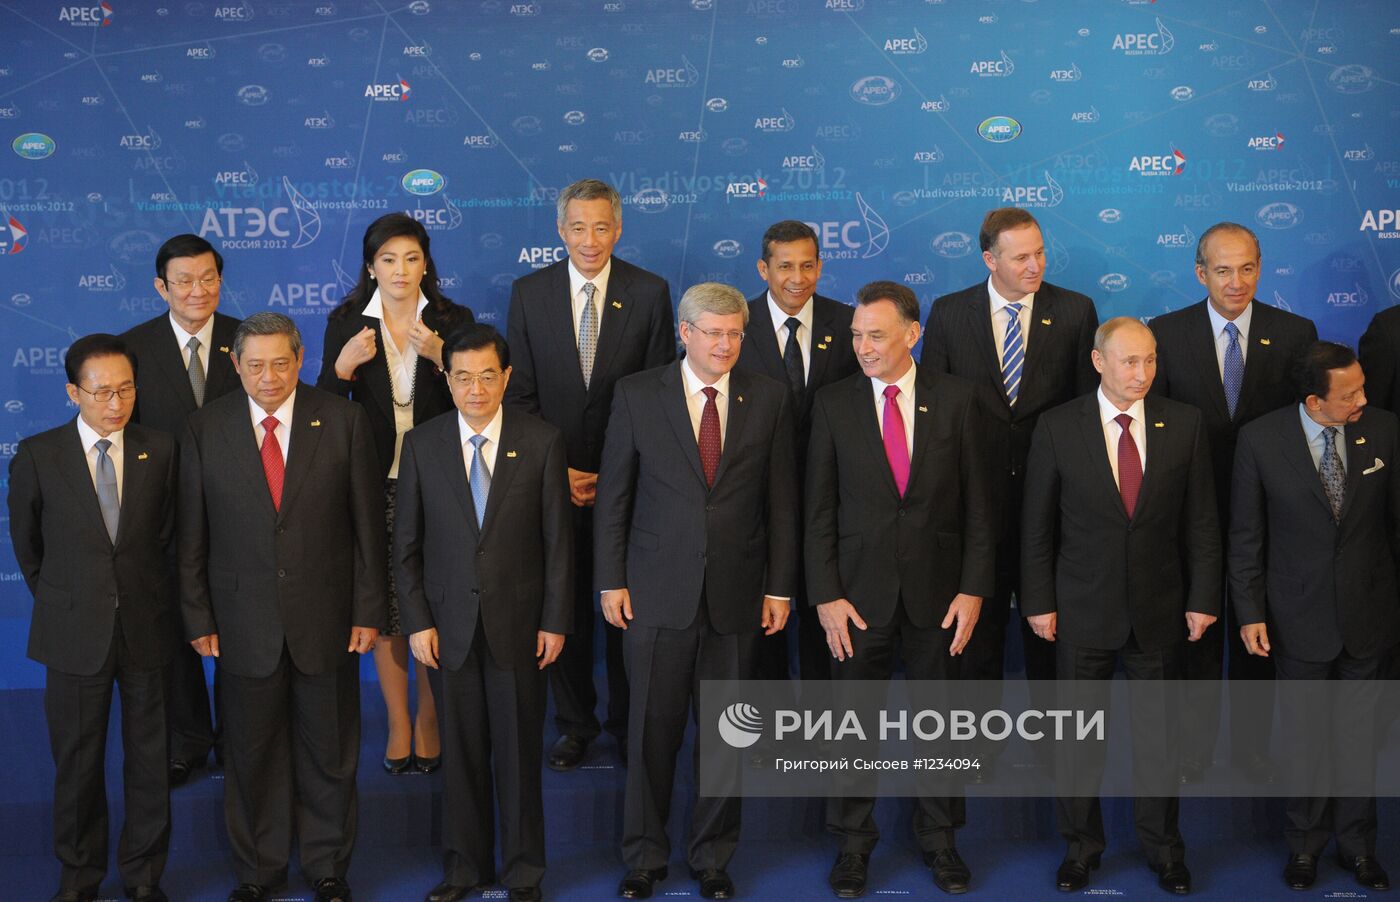 Официальное фотографирование лидеров экономик АТЭС